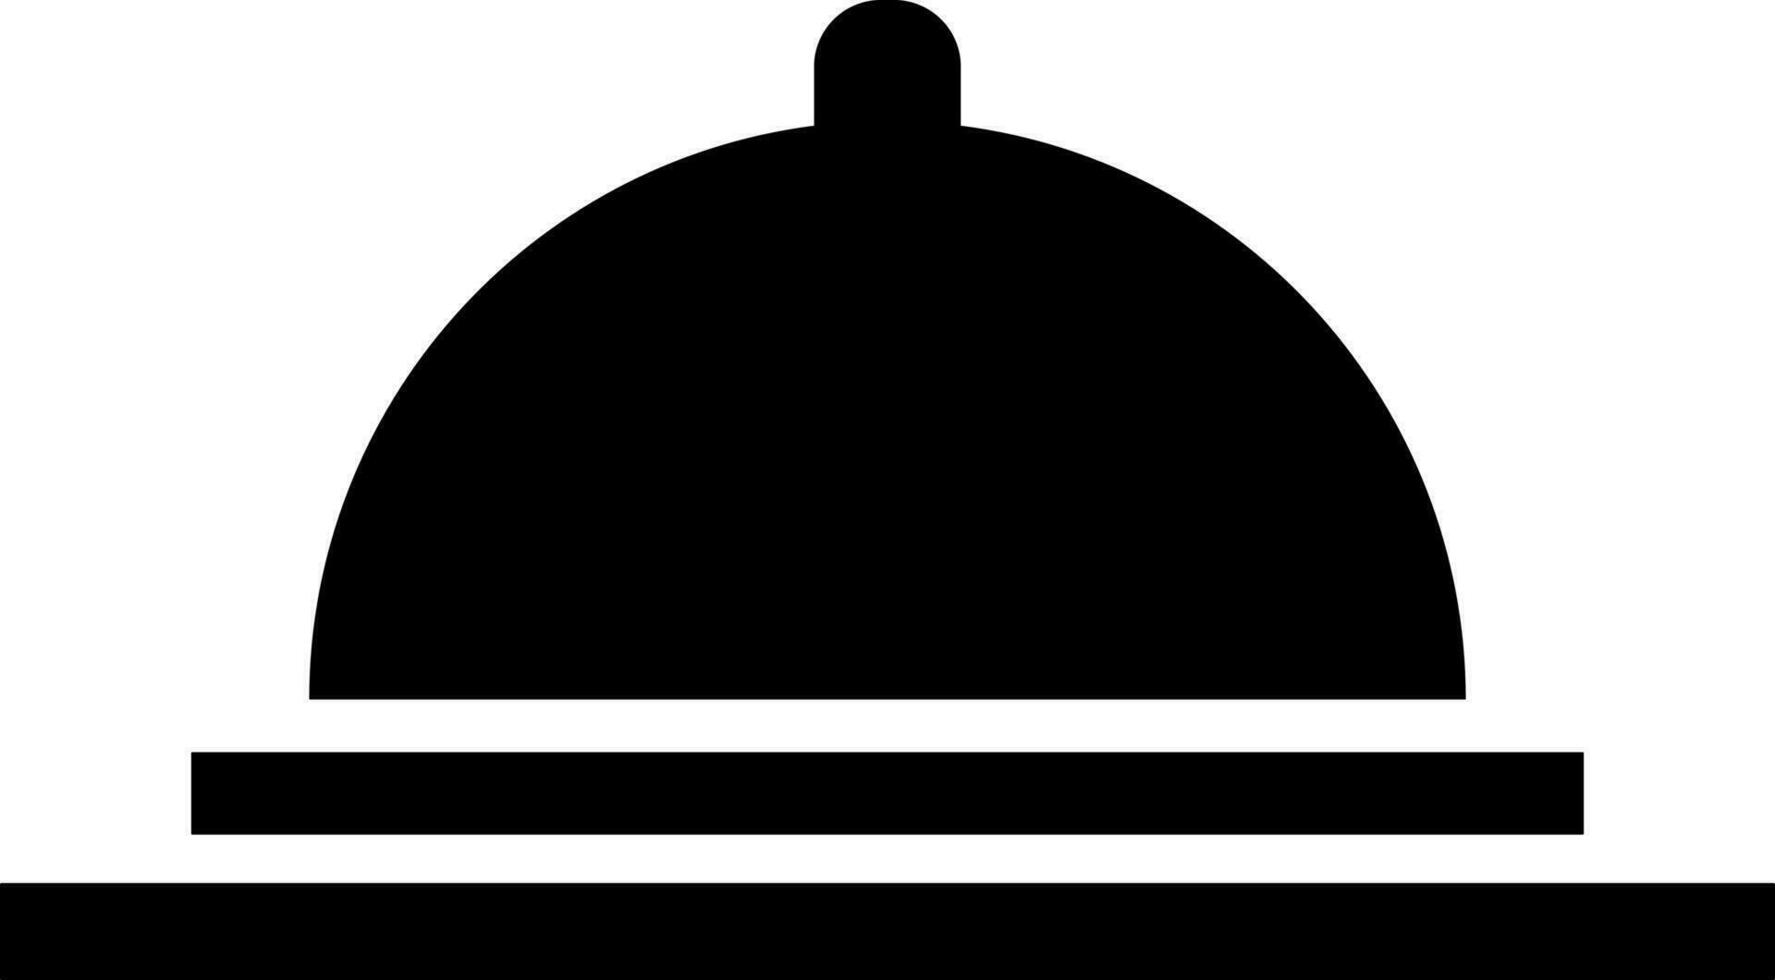 Cloche icon or symbol in Black and White color. vector